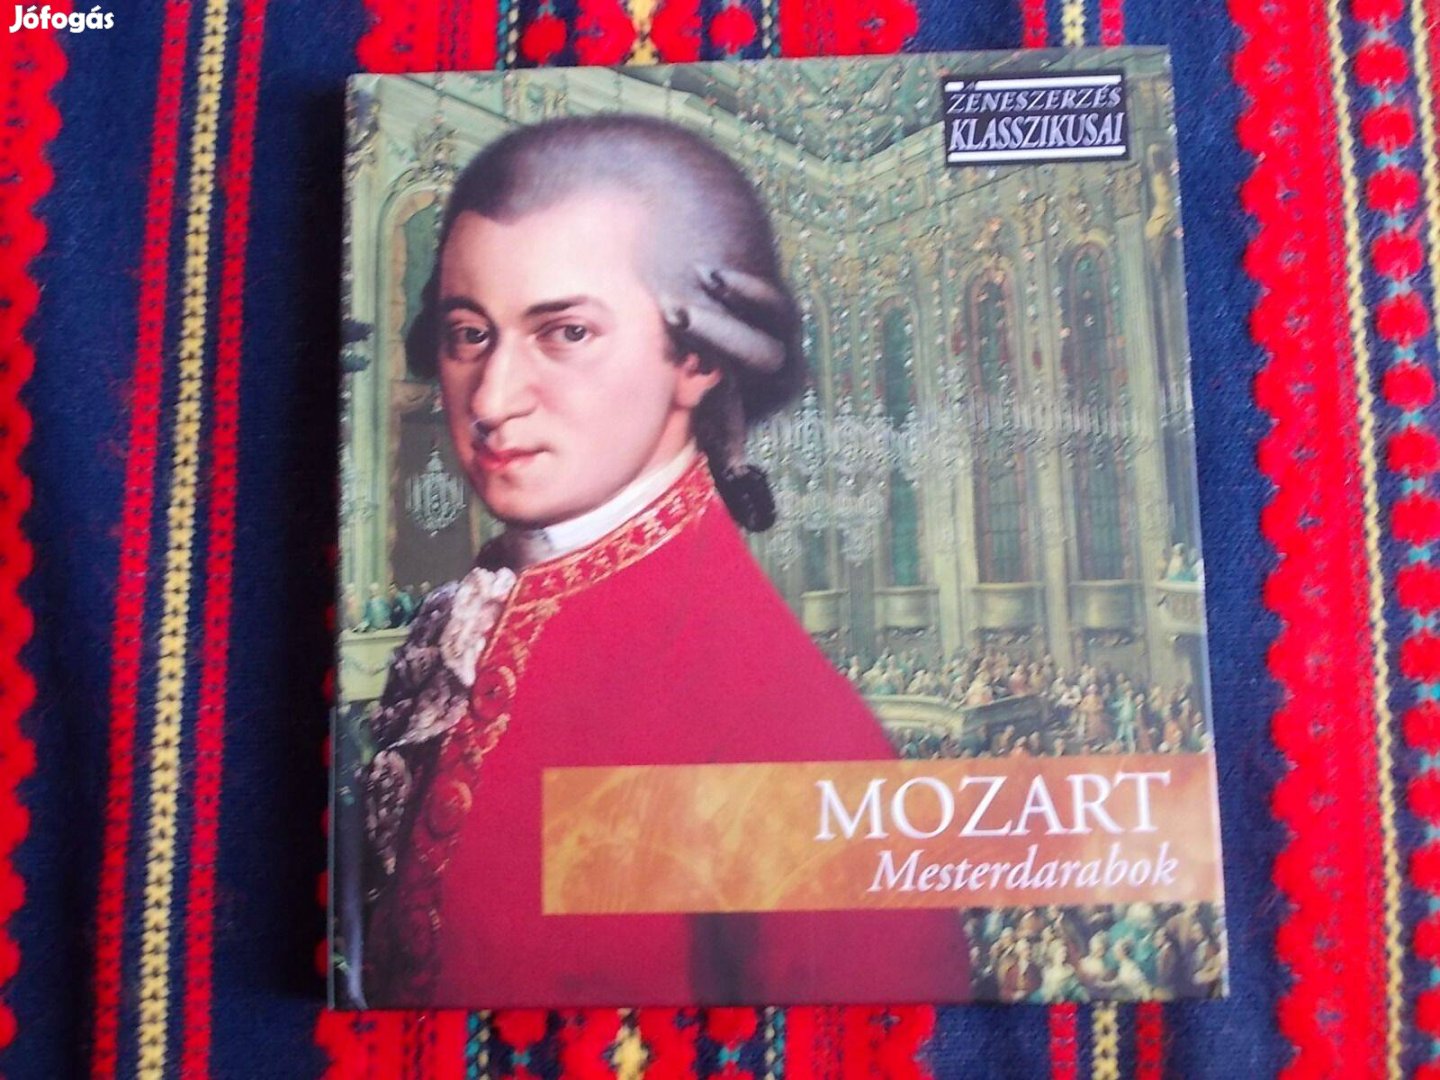 Mozart - Mesterdarabok CD